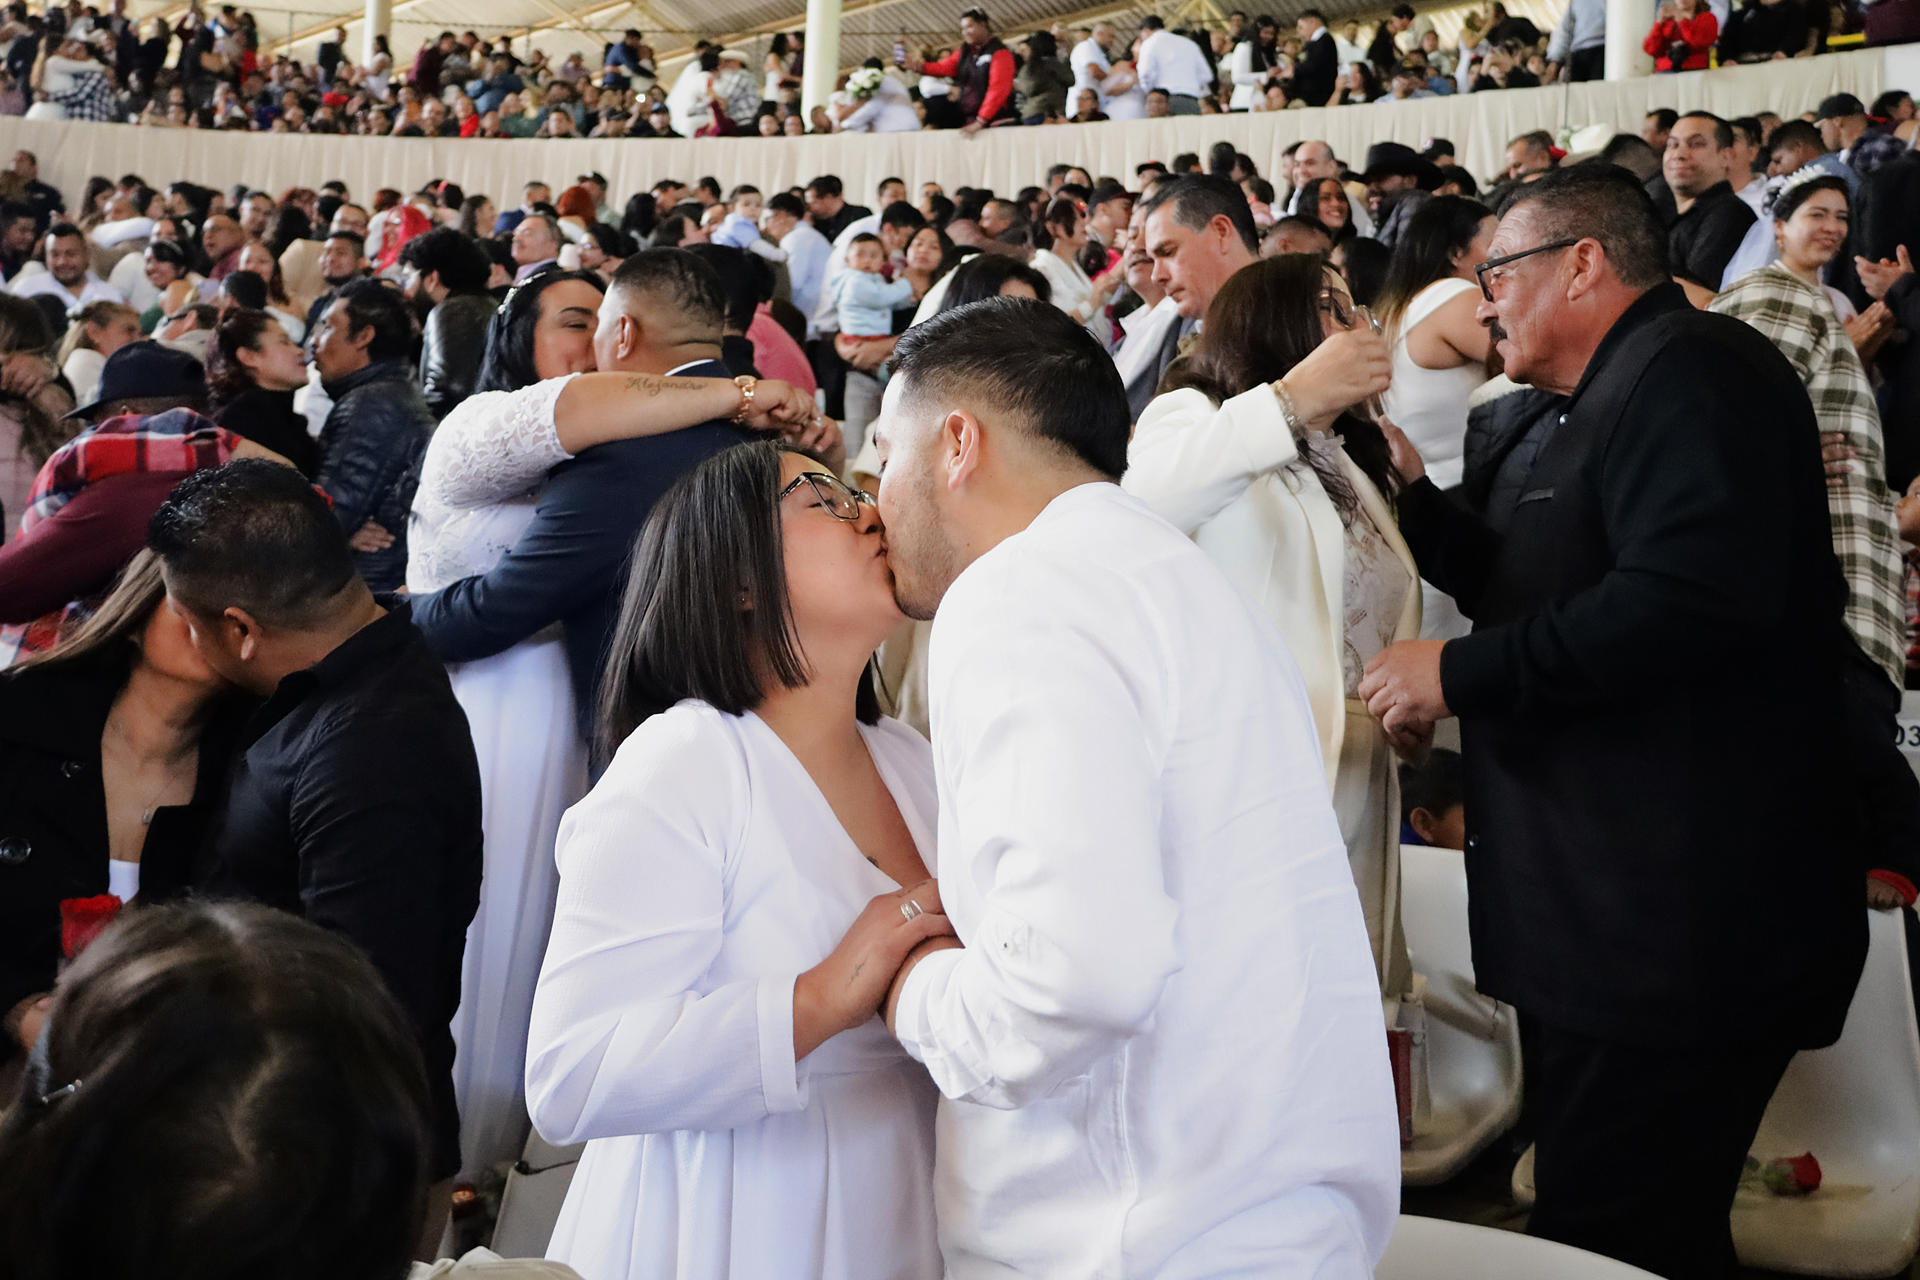 Parejas se besan al contraen matrimonio este miércoles durante una boda colectiva en la ciudad de Tijuana, Baja California (México). EFE/Joebeth Terriquez